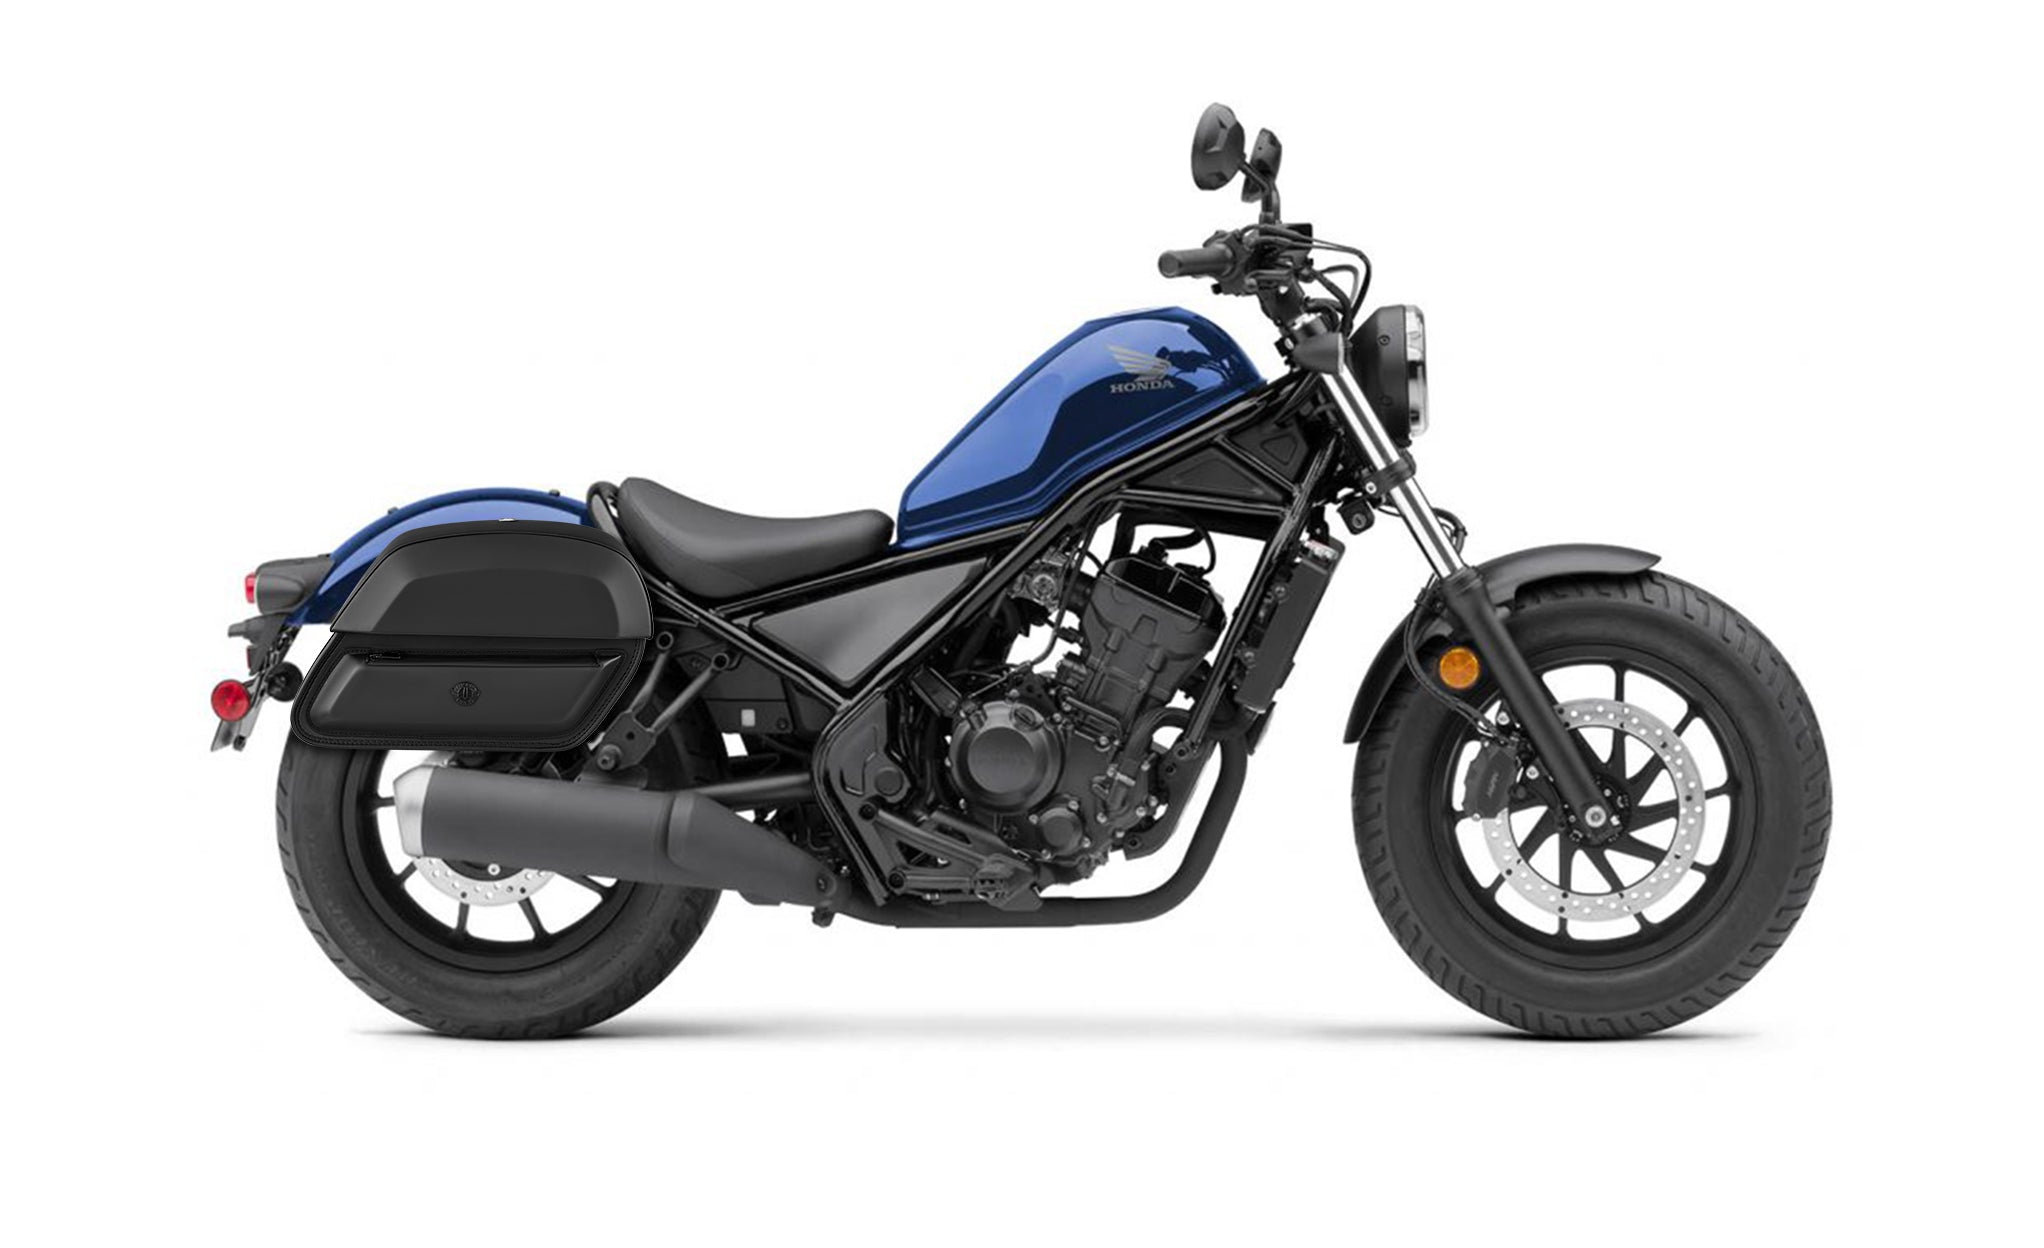 28L - Pantheon Medium Quick-Mount Honda Rebel 300 Motorcycle Saddlebags @expand